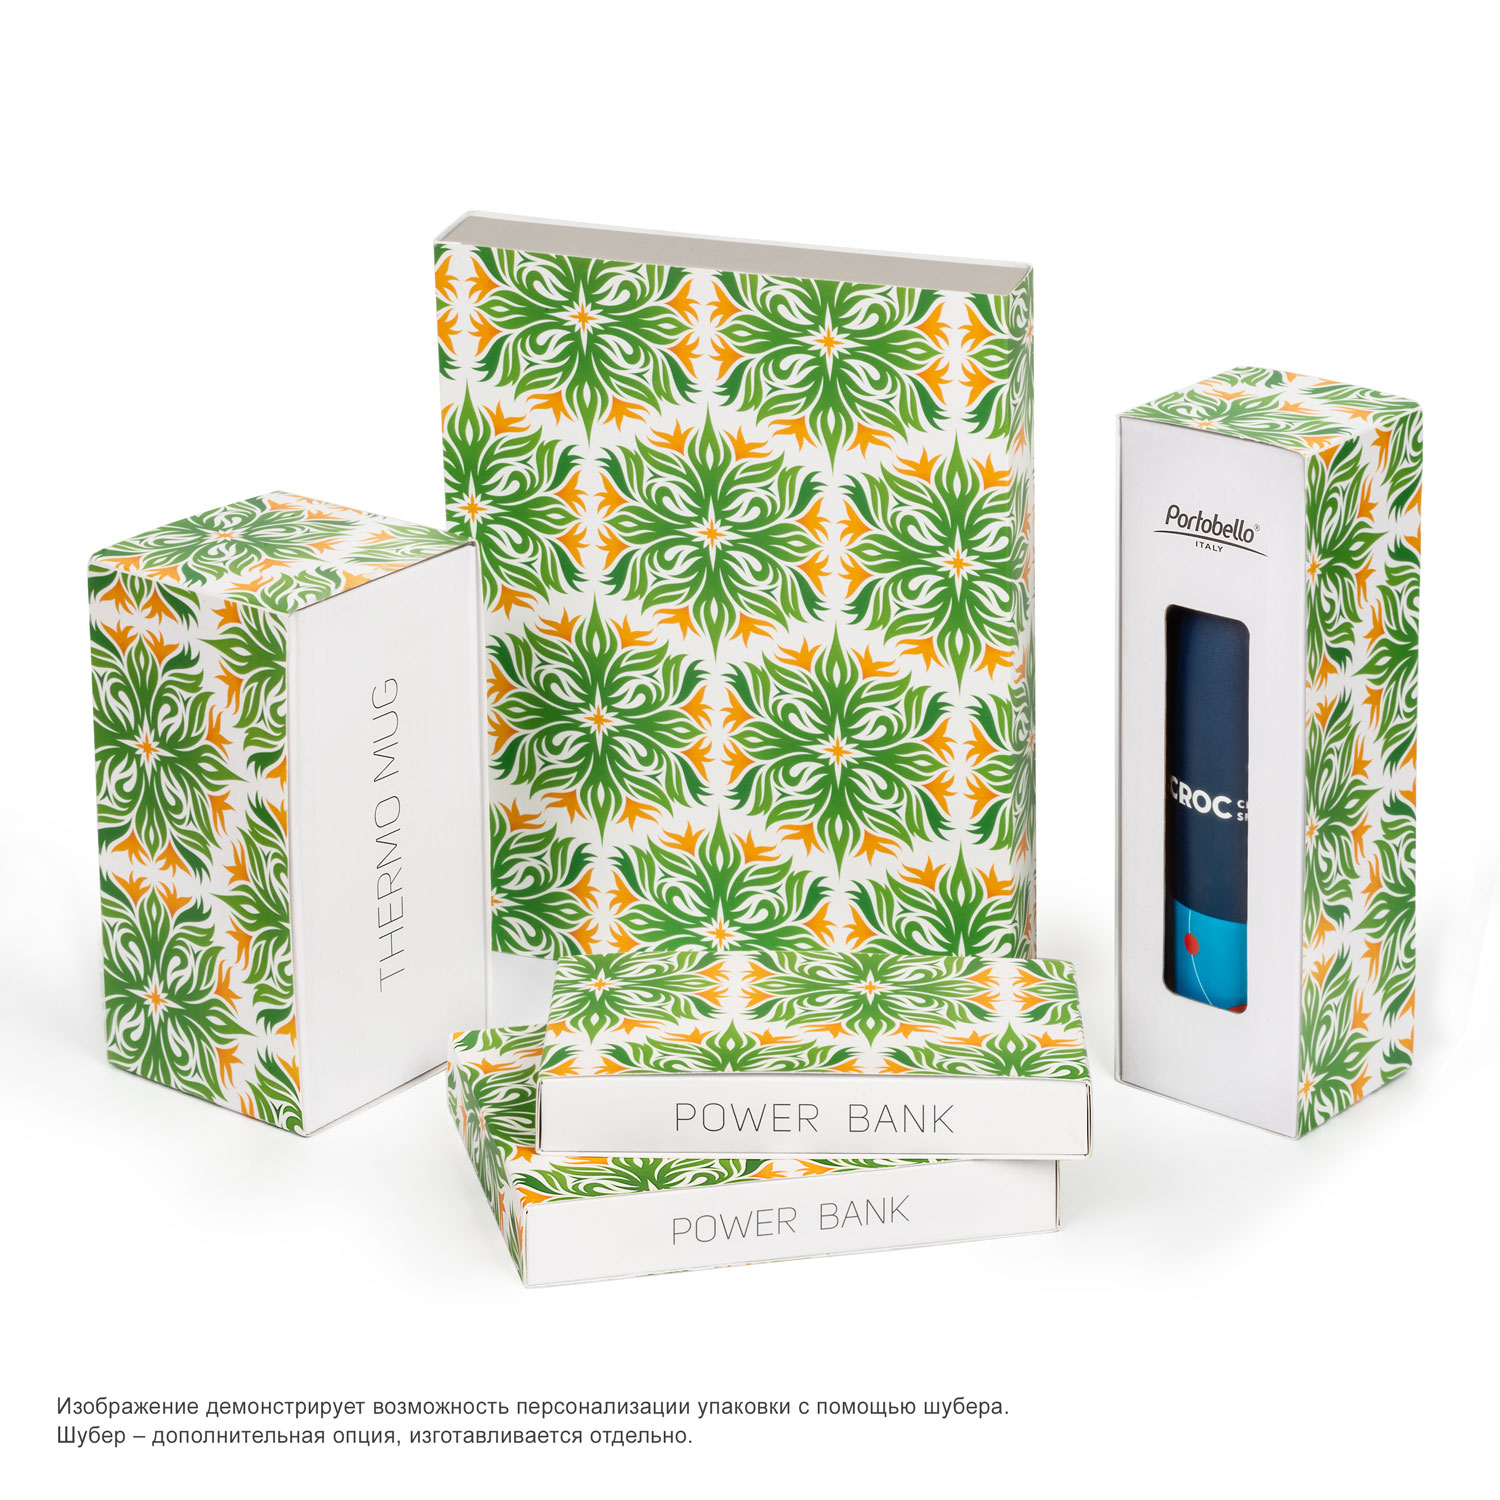 Внешний аккумулятор, Tweed PB, 10000 mah, зеленый, подарочная упаковка с блистером